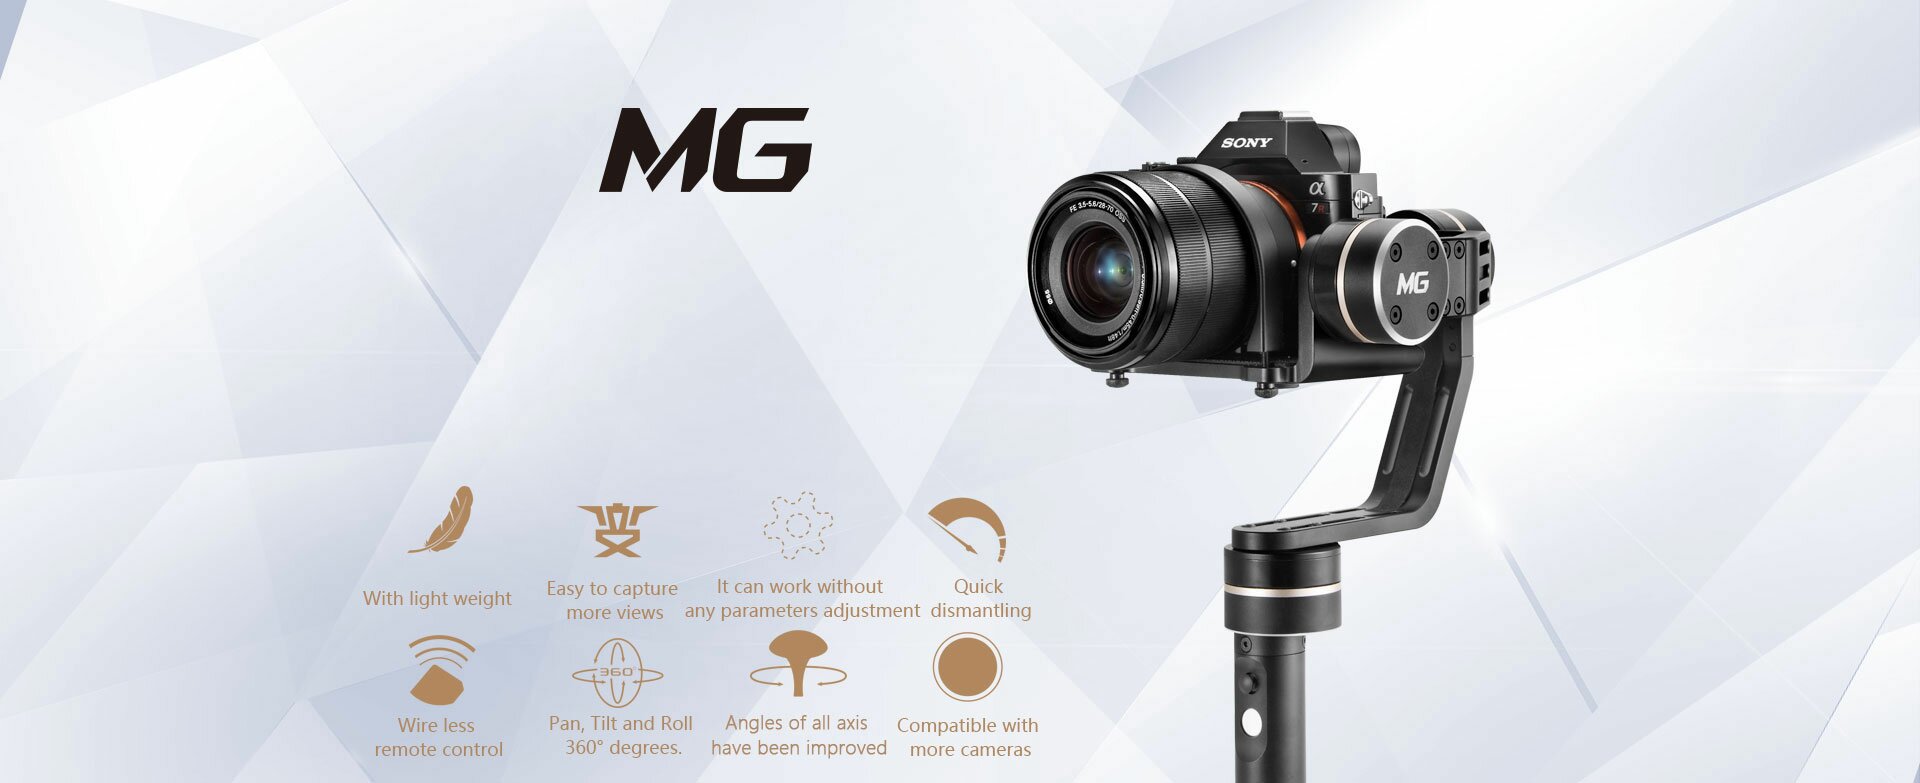 GIMBAL RECZNY FEIYU-TECH MG 3-AXIS dla lustrzanek i aparatów kompaktowych